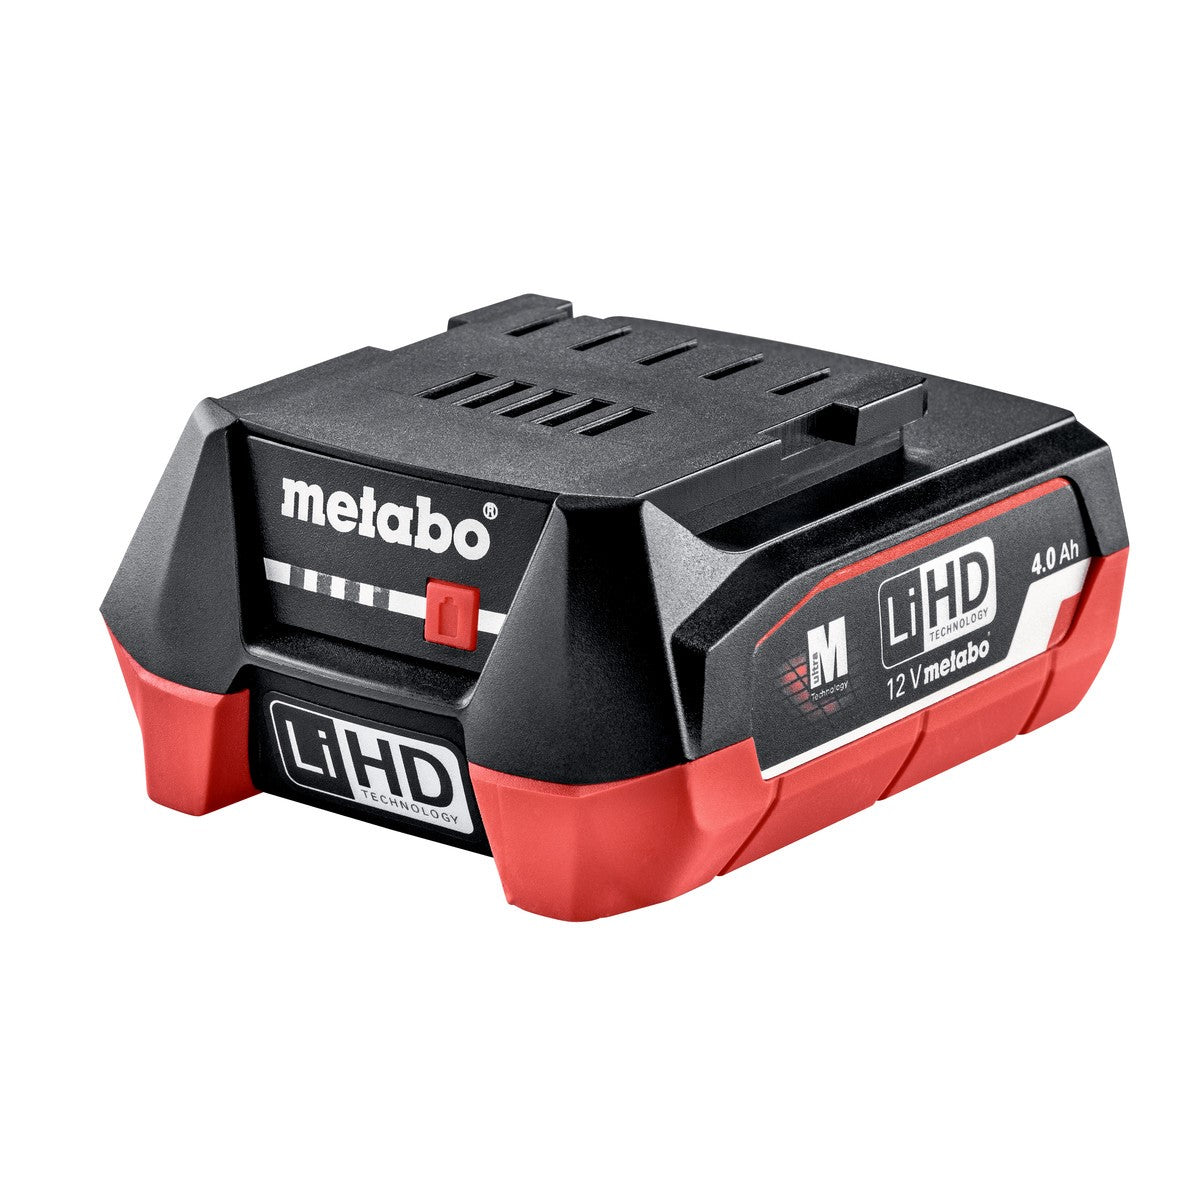 Metabo (625349000) 12V 40AH LiHD Battery Pack